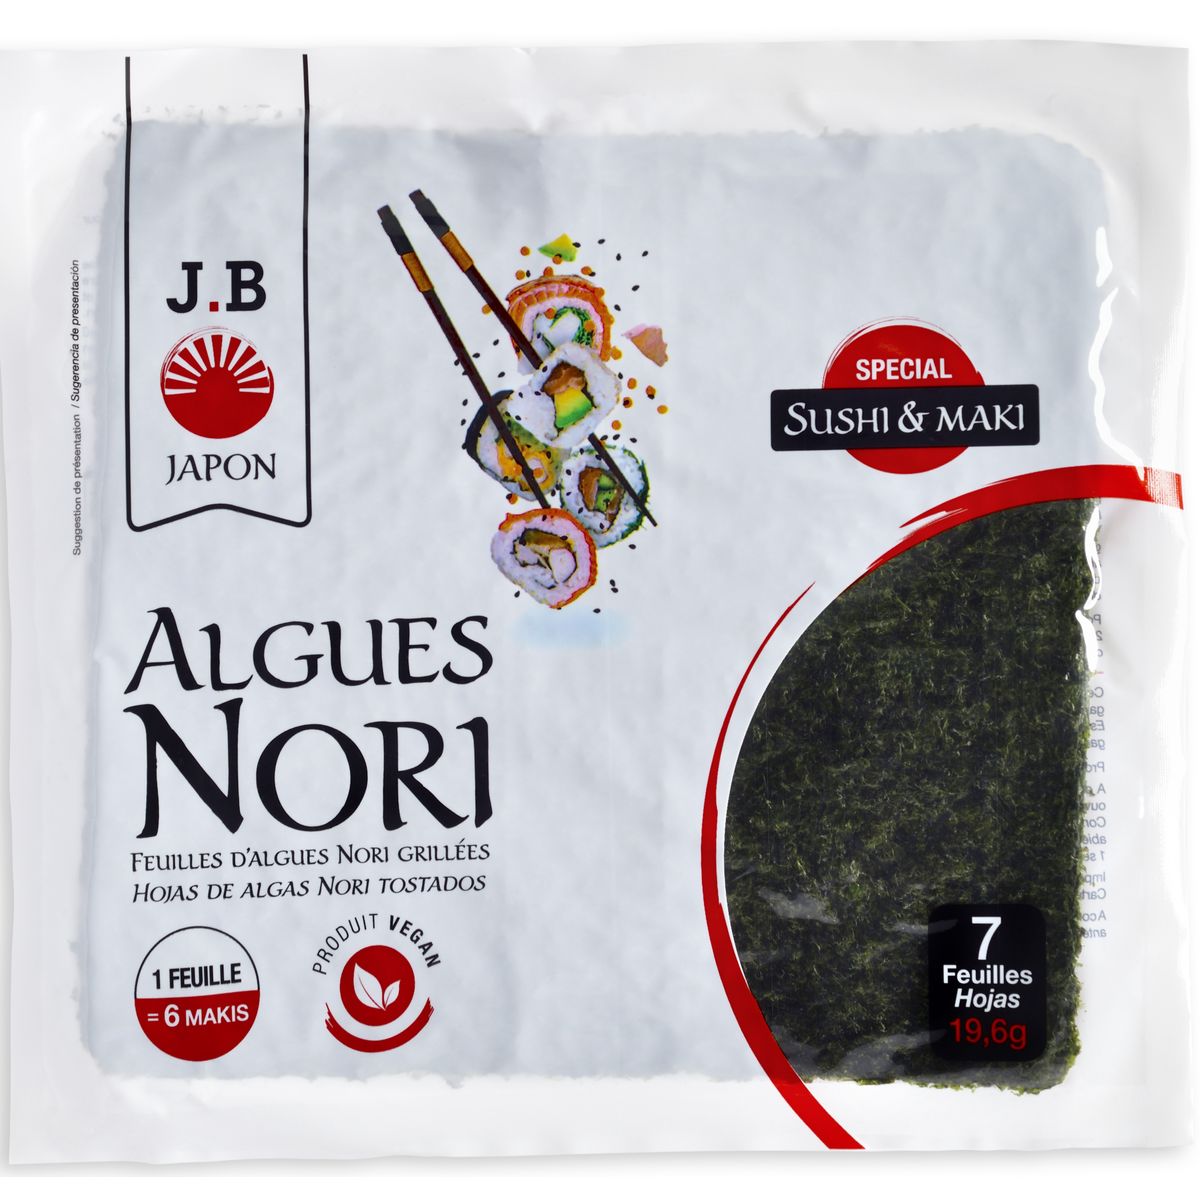 J.B JAPON Algues nori 7 feuilles 20g pas cher 